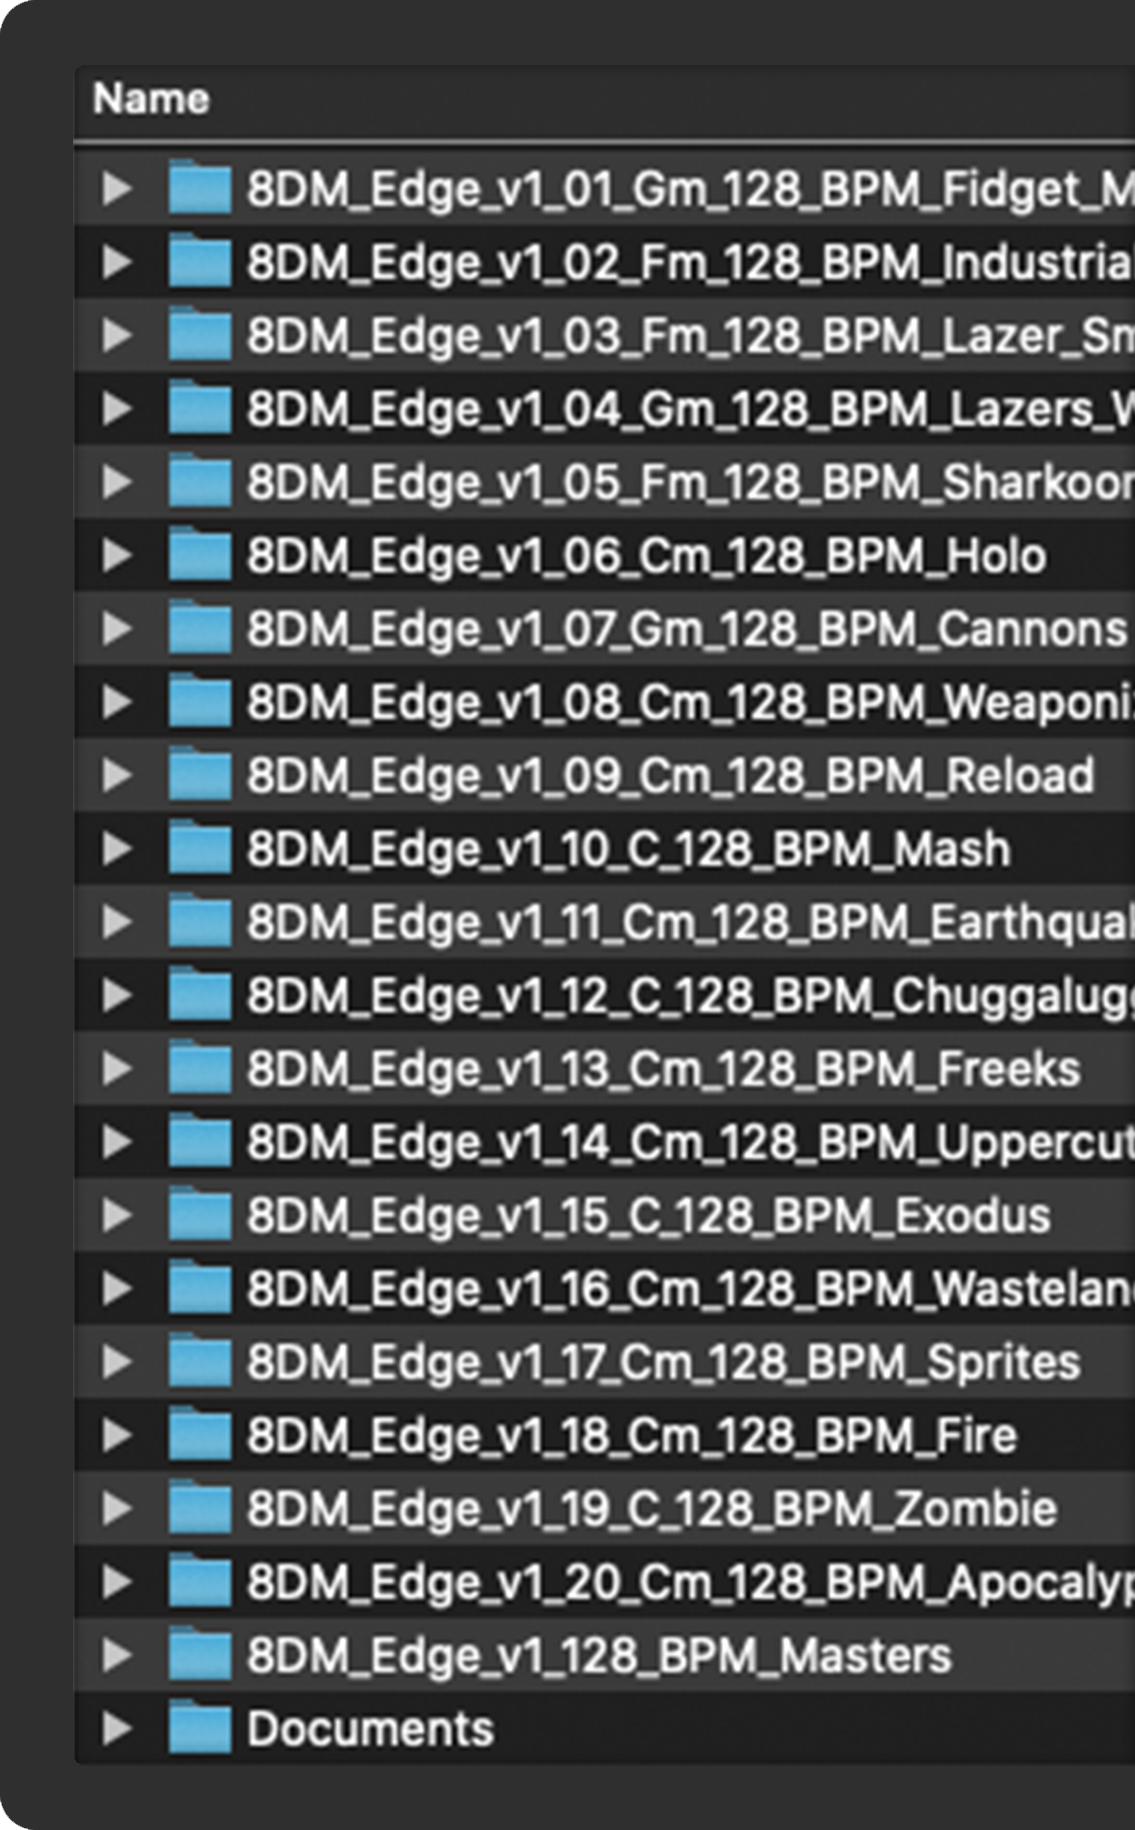 8DM Edge Volume 1 Bundle